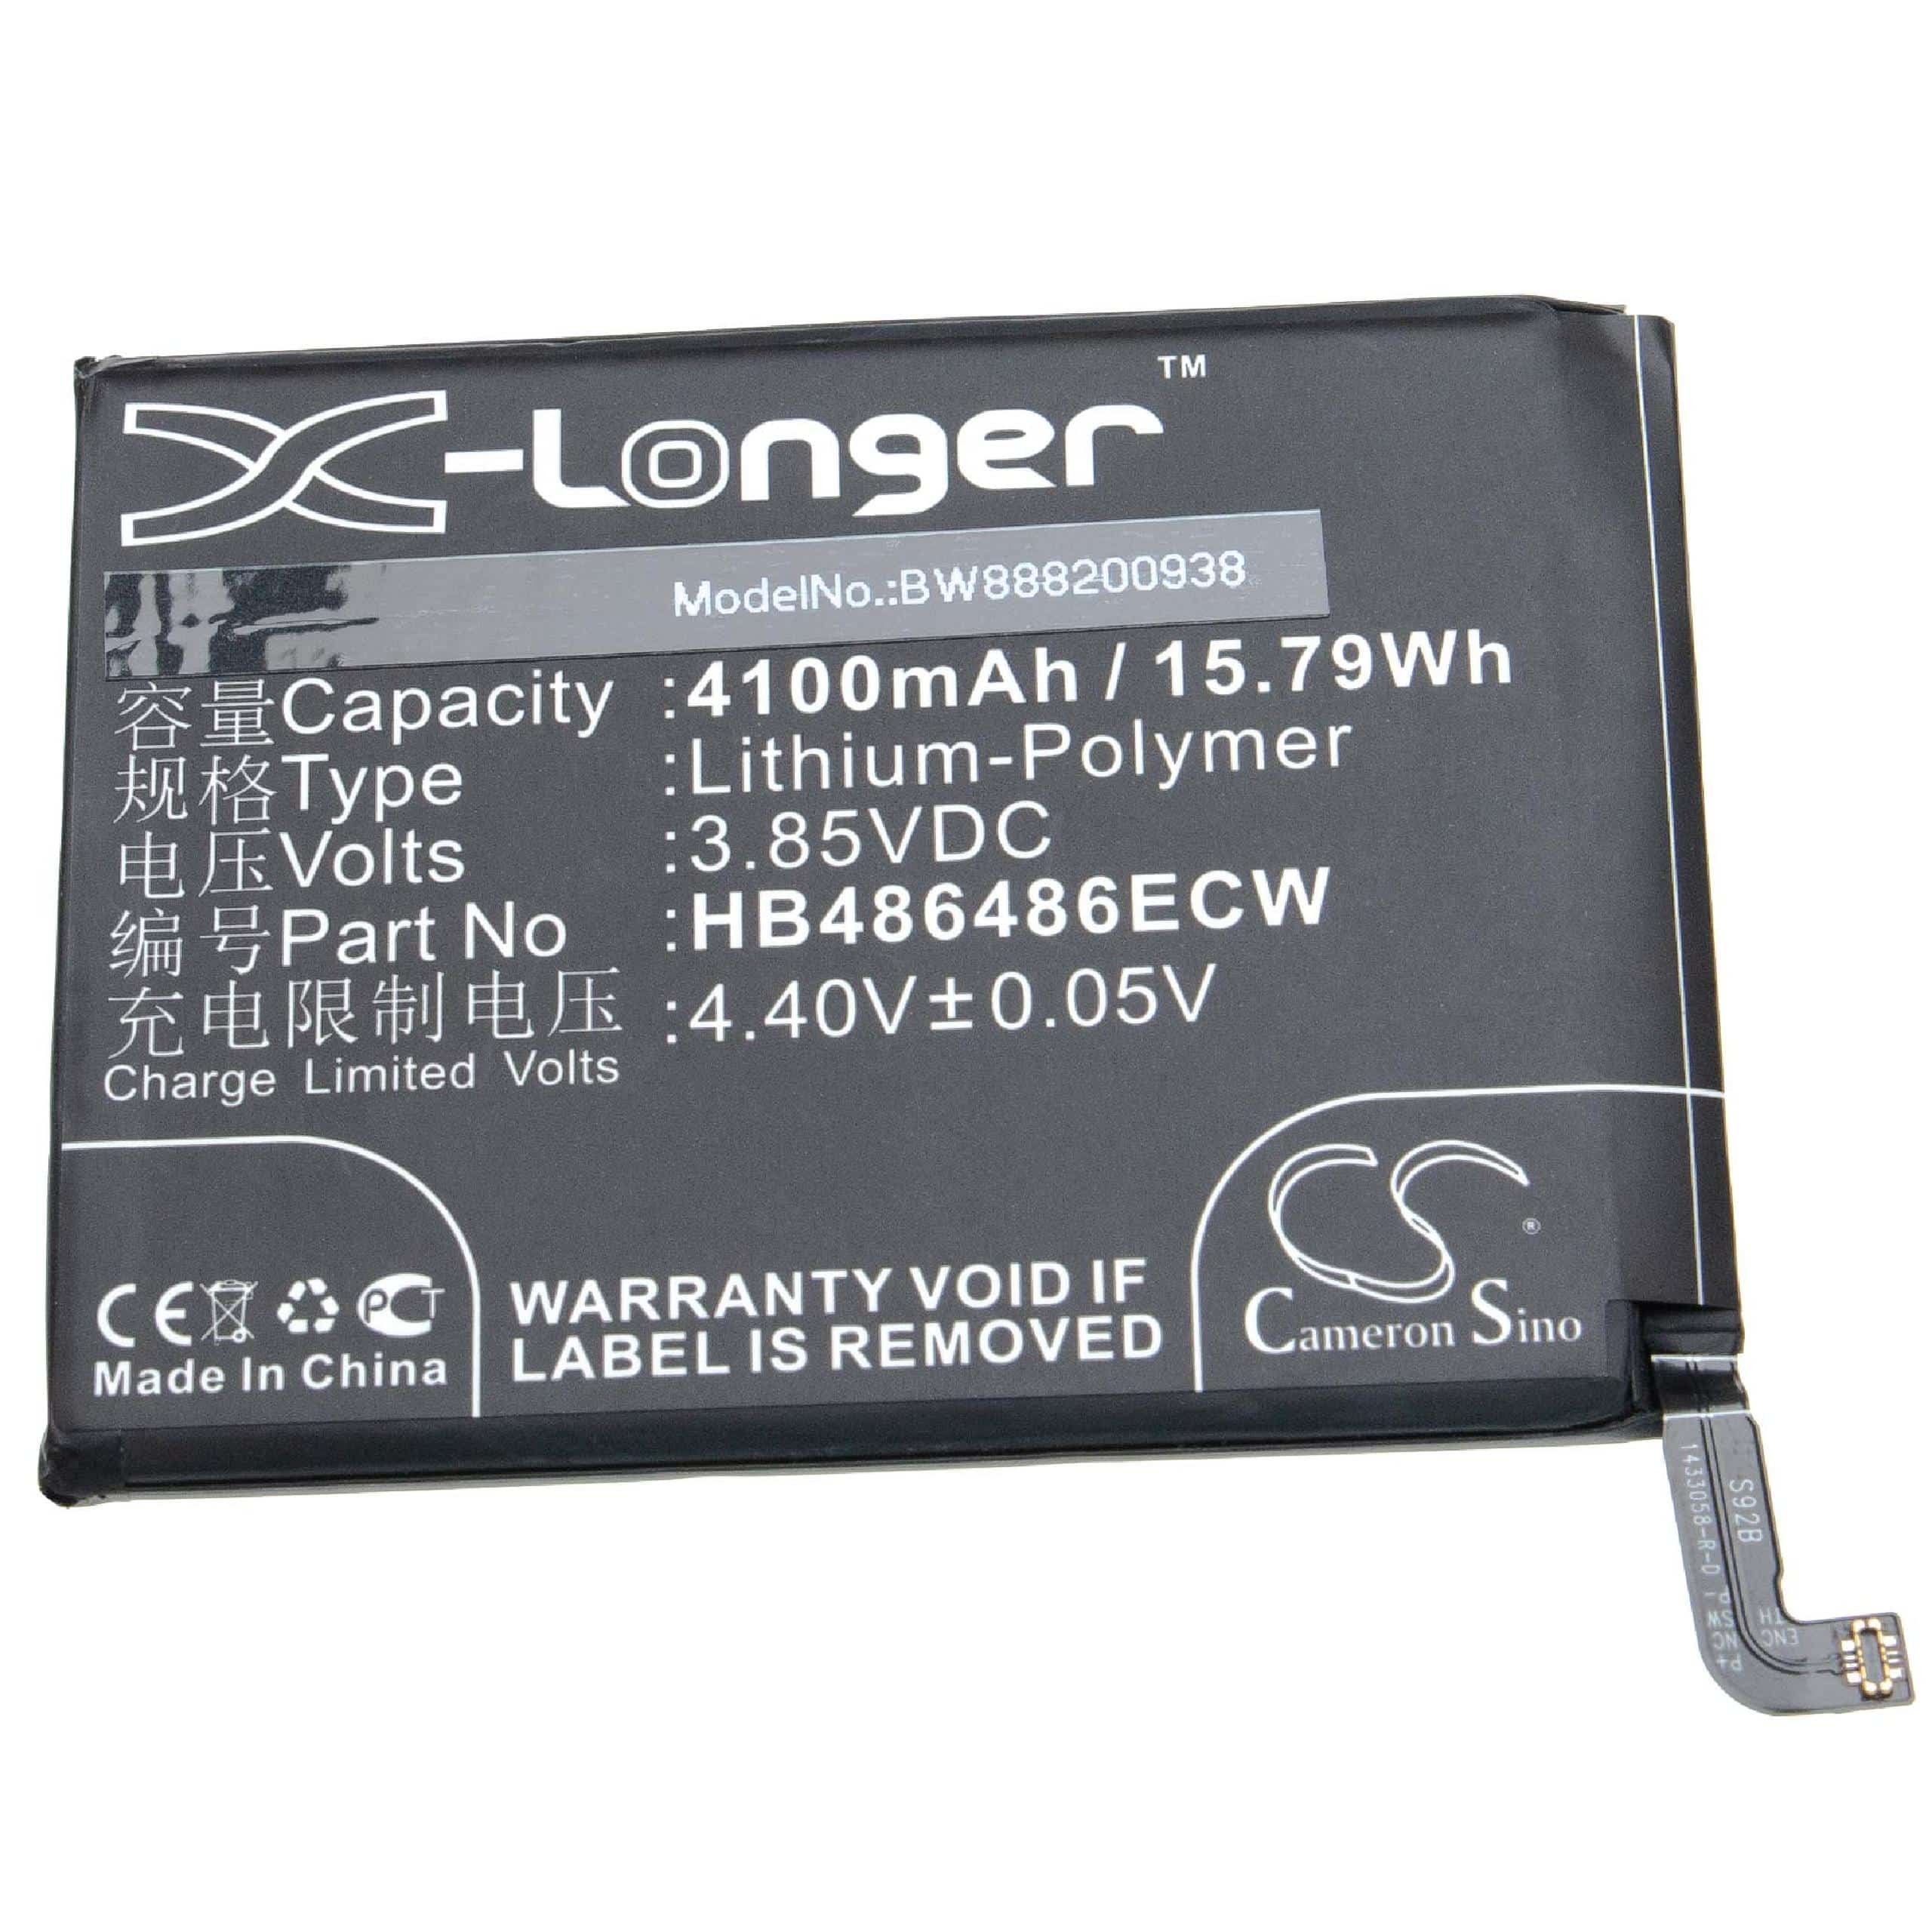 Batterie remplace Huawei HB486486ECW pour téléphone portable - 4100mAh, 3,85V, Li-polymère